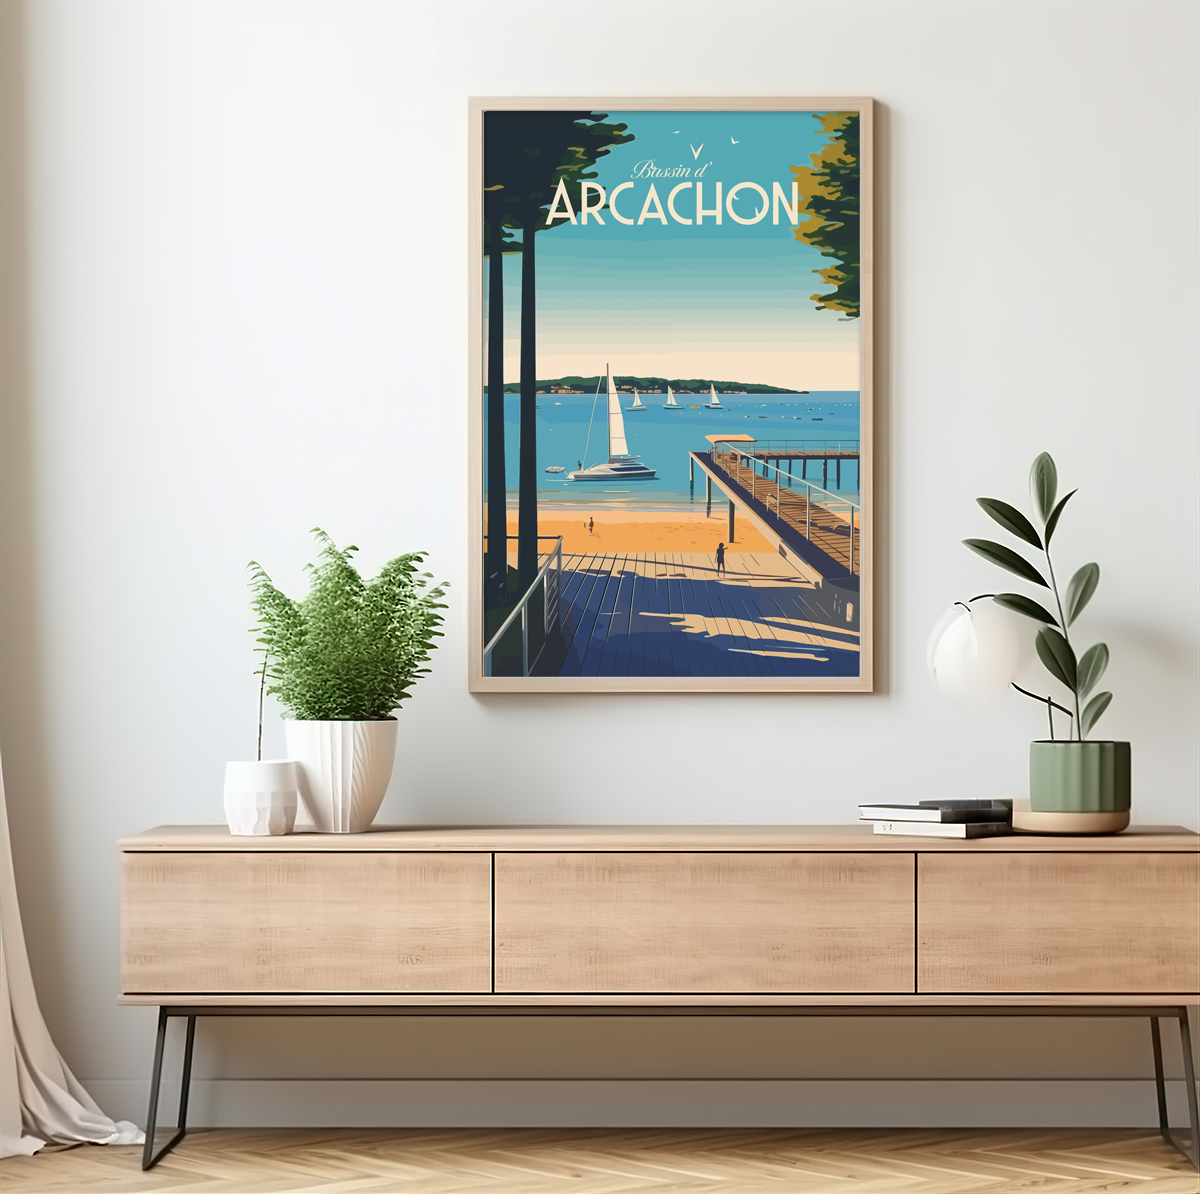 Arcachon - Plage poster by bon voyage design